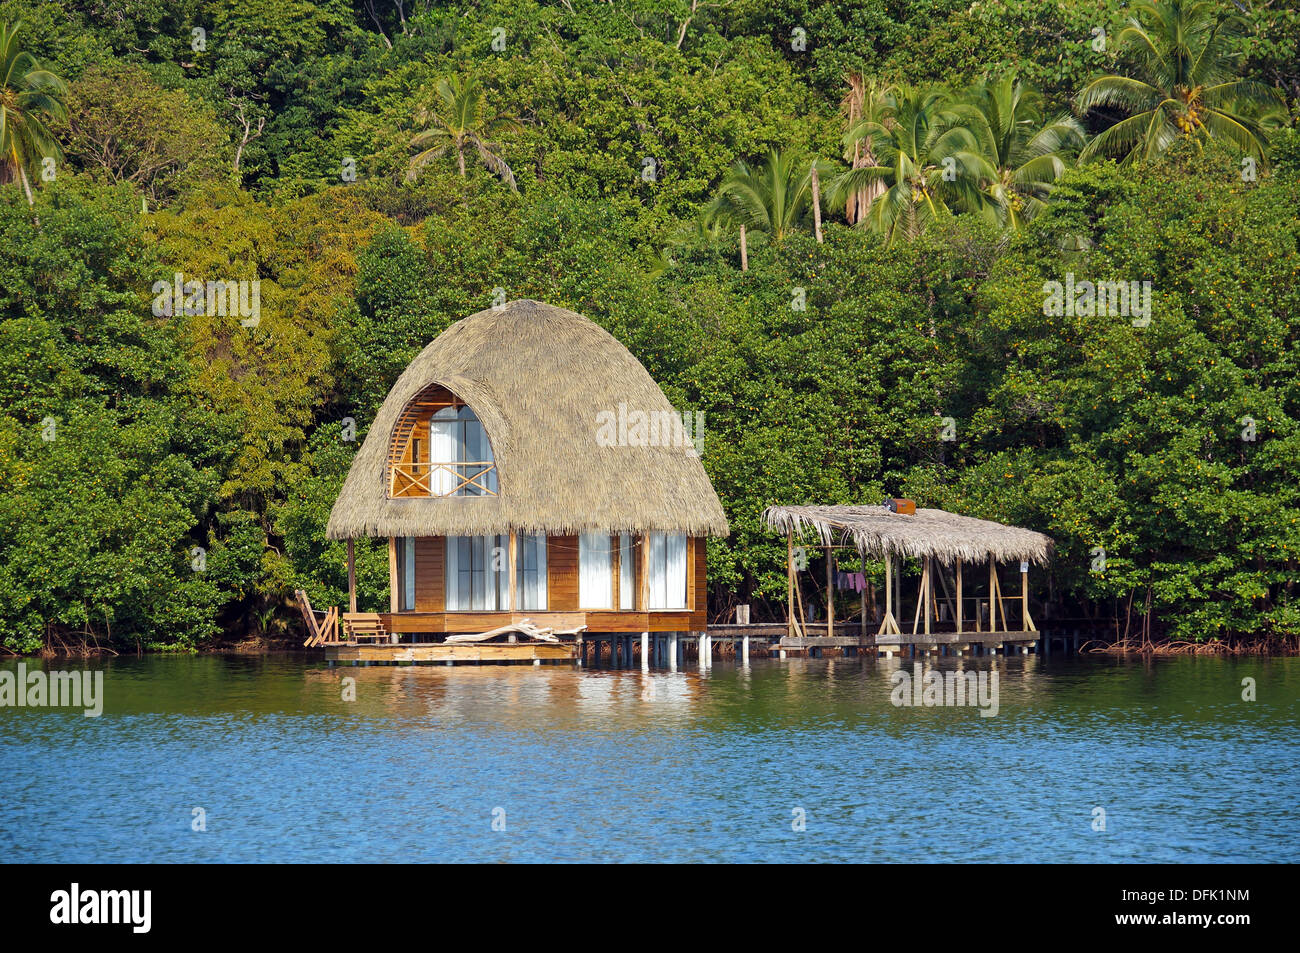 Sobre el agua bungalow con techo de palma y una exuberante vegetación tropical en el fondo, Bocas del Toro, mar Caribe, Panamá Foto de stock